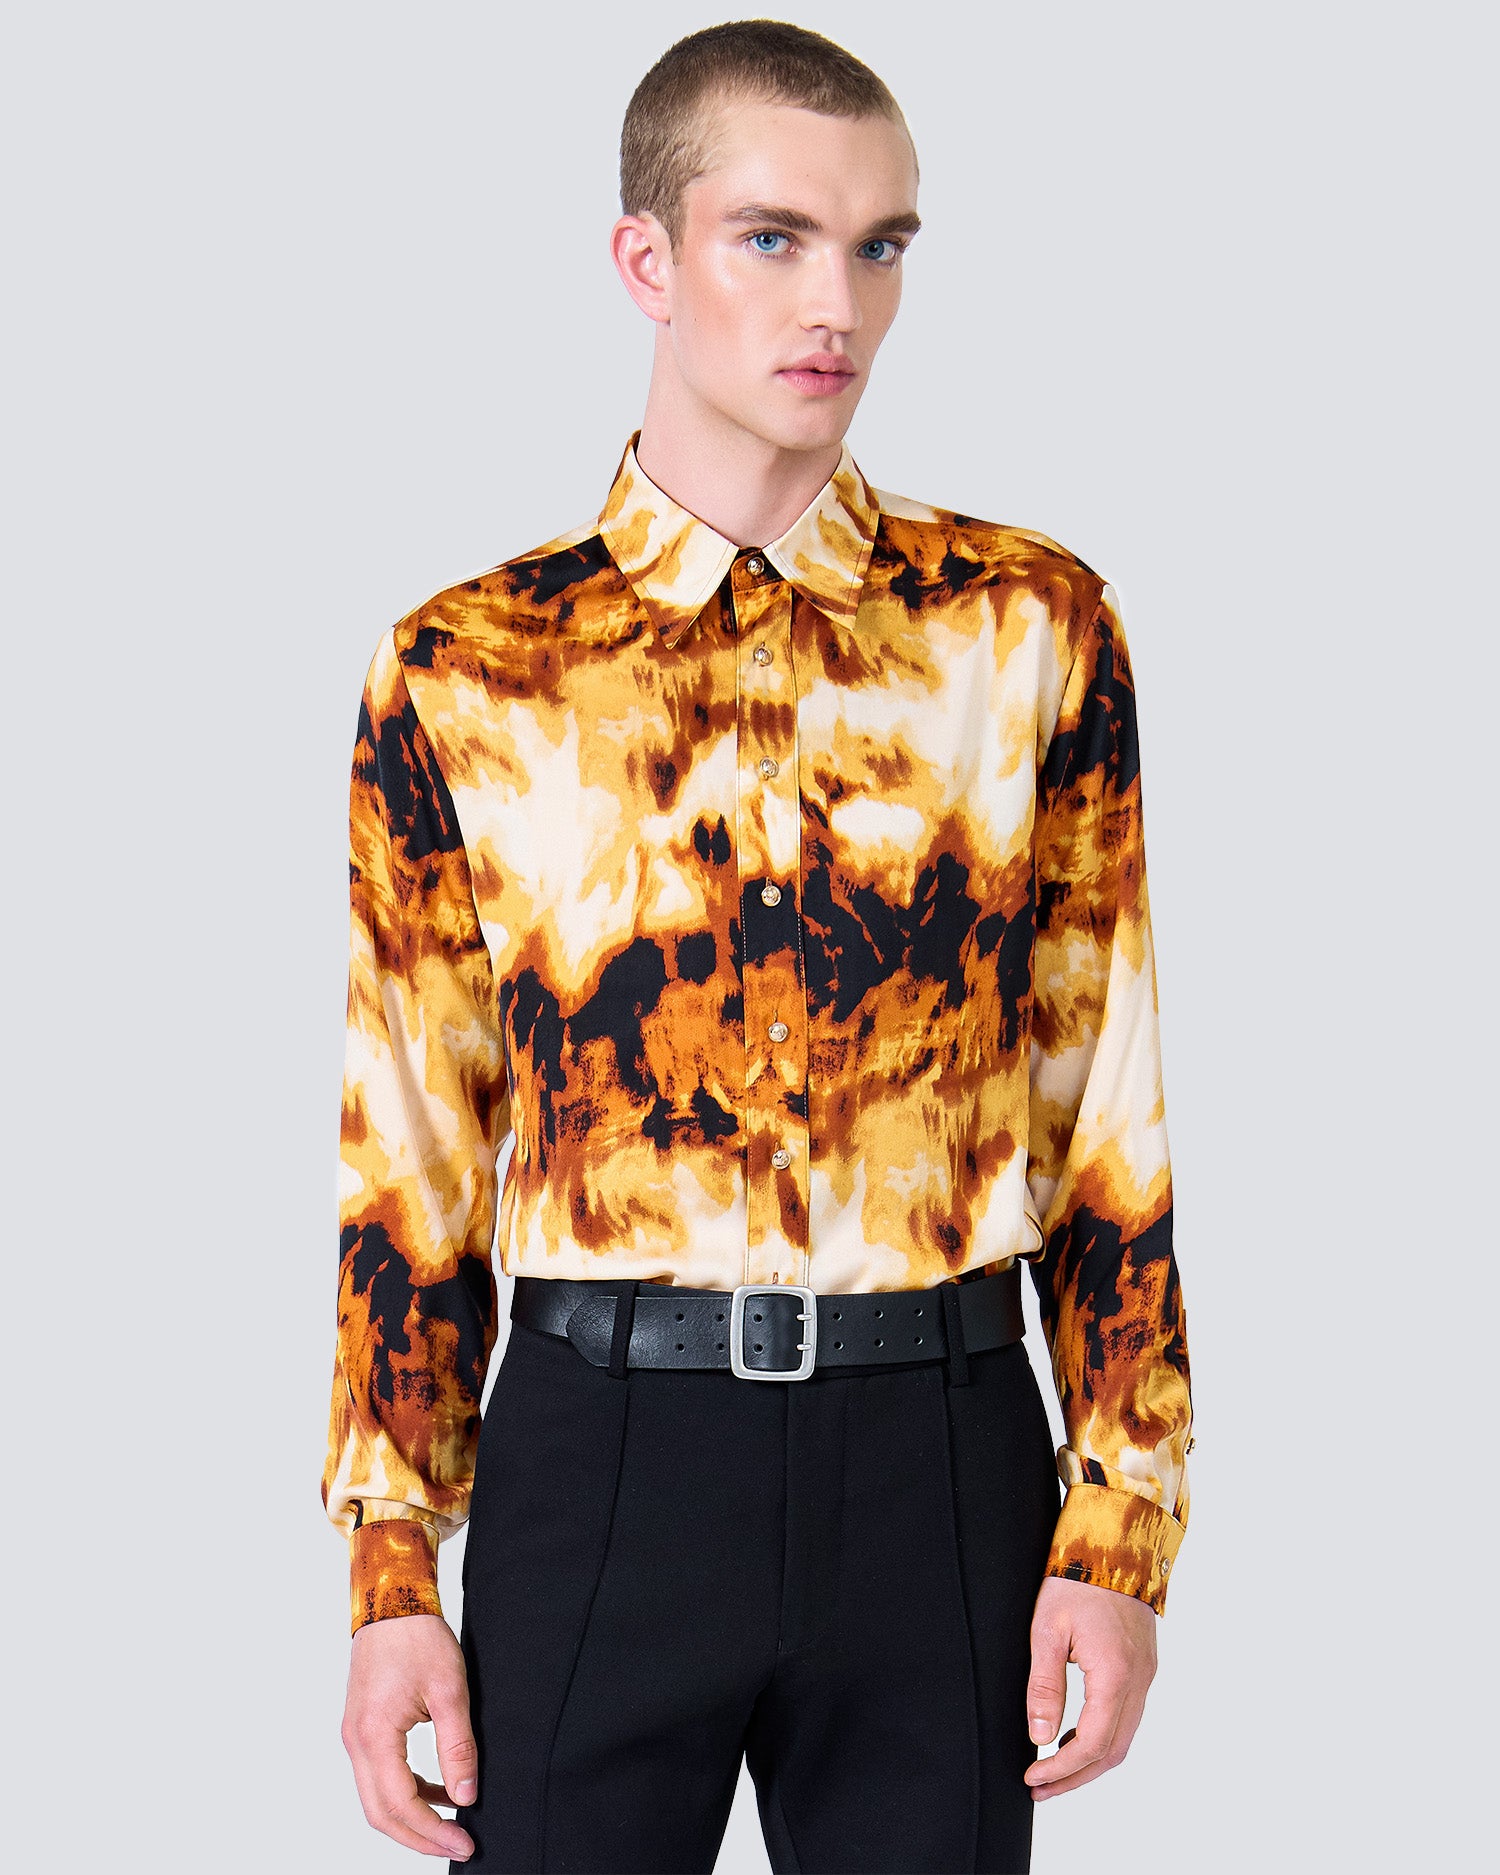 Blaze Print Shirt